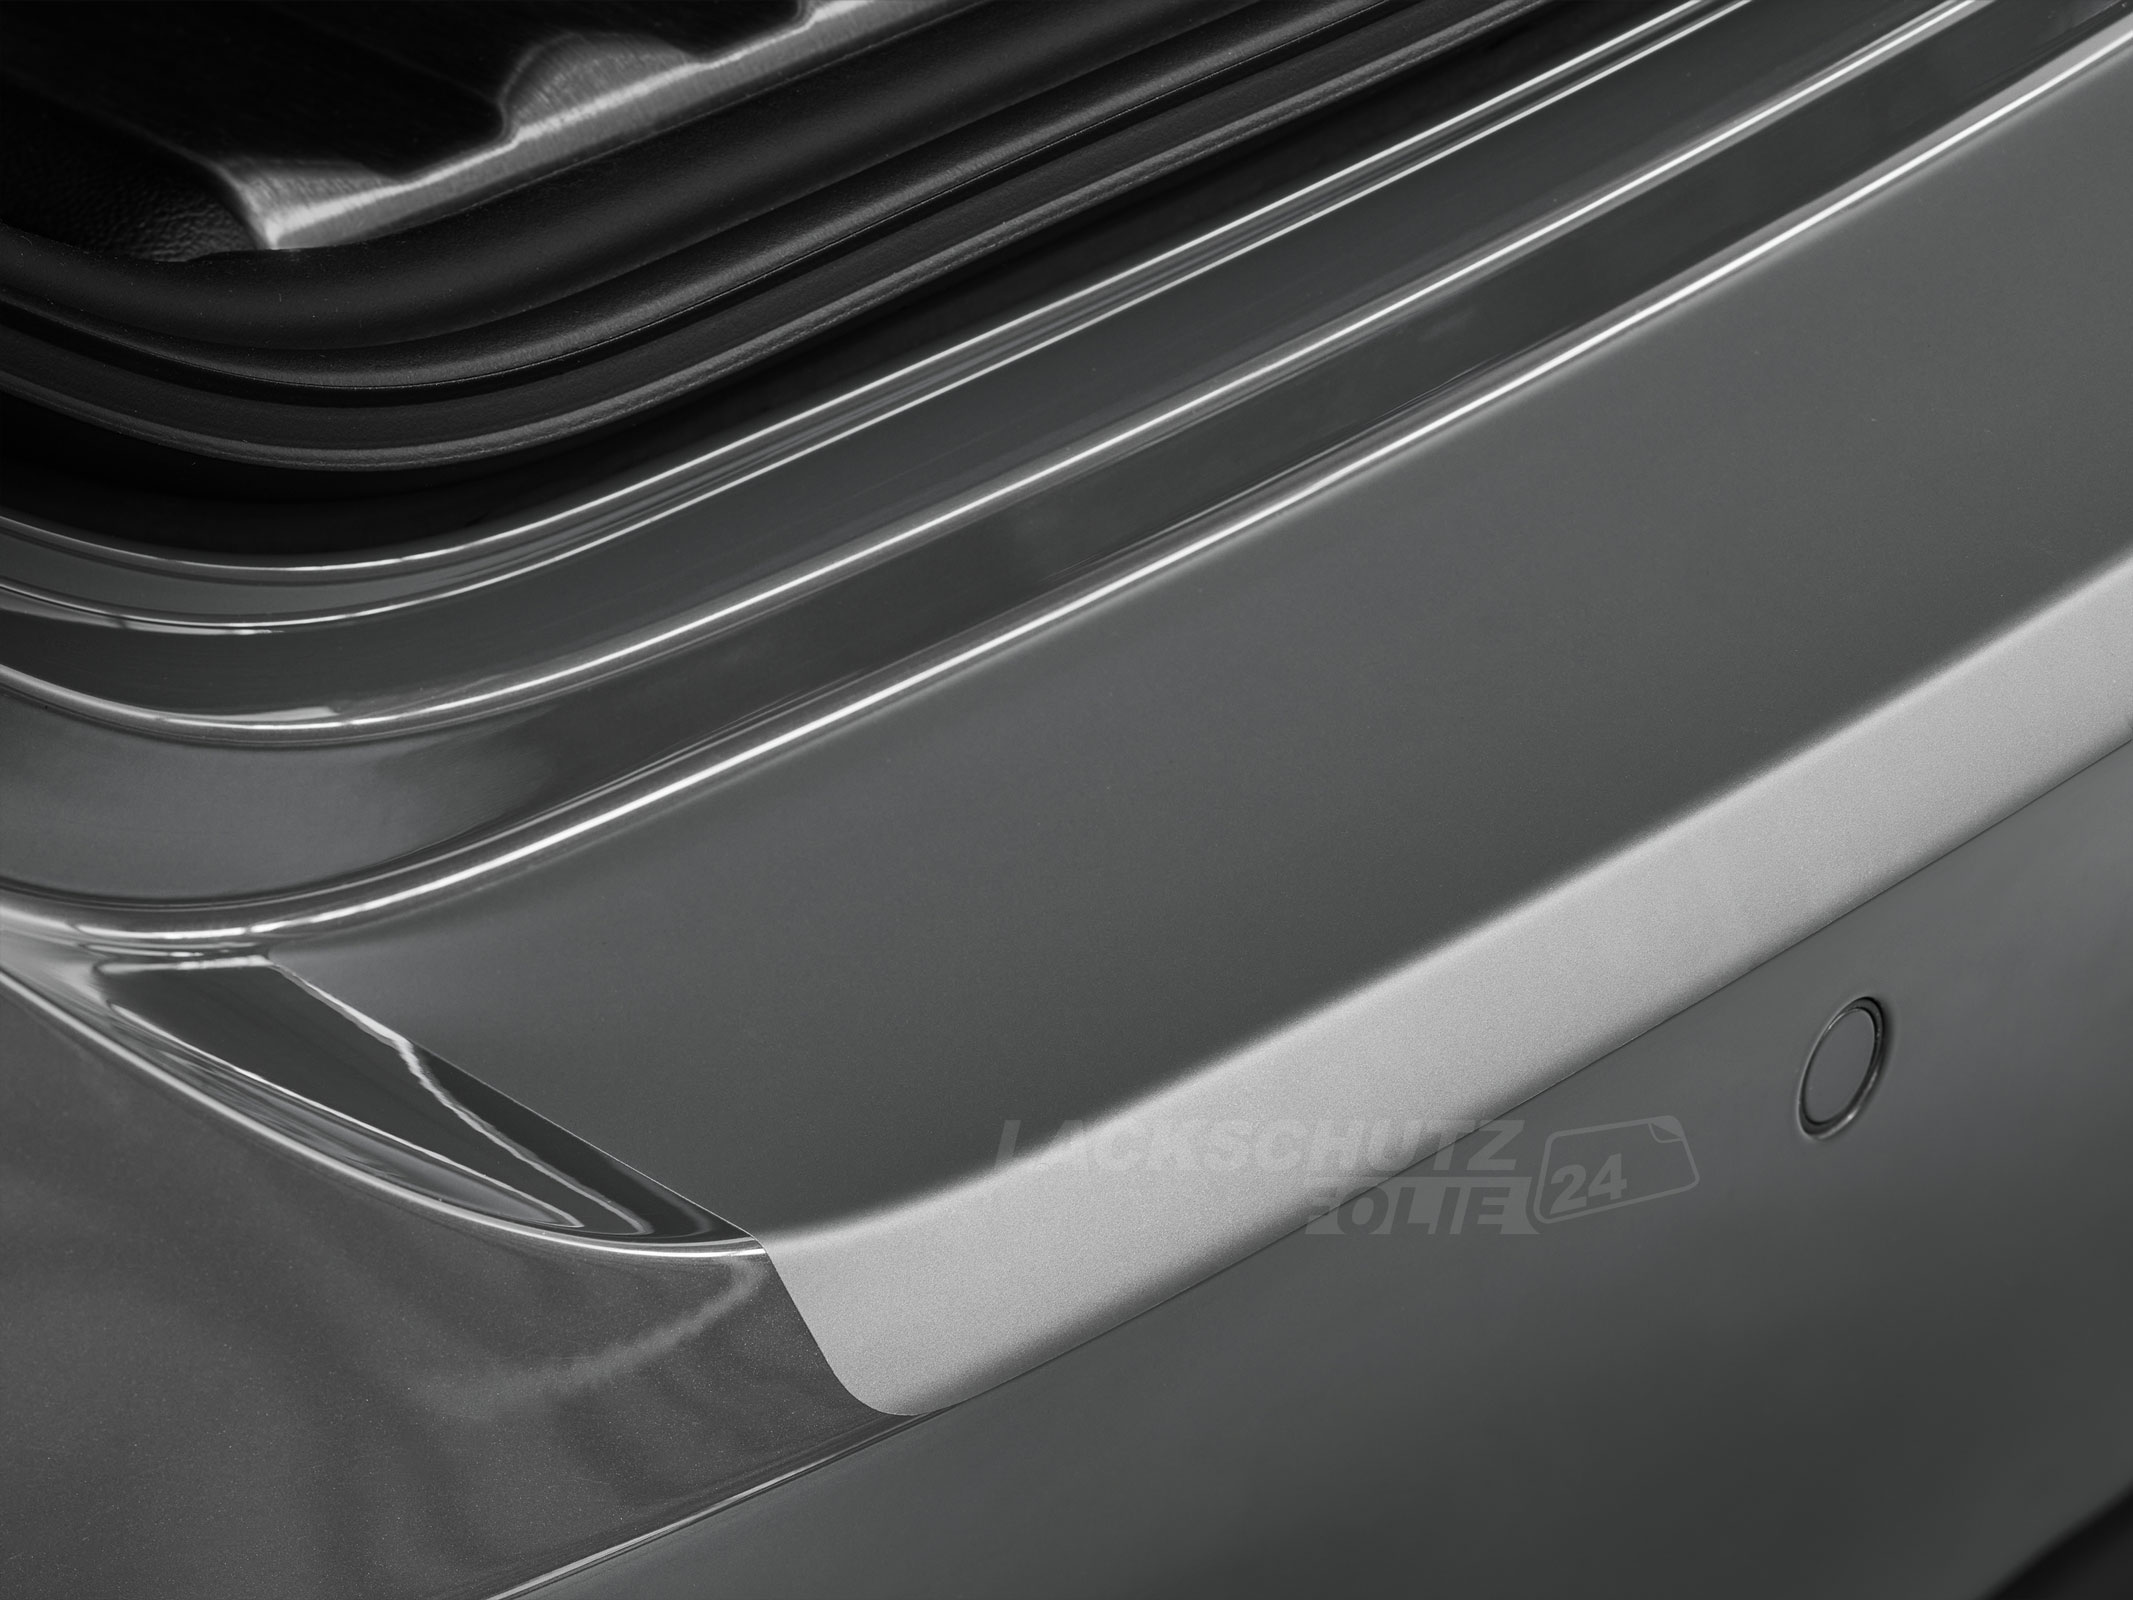 Ladekantenschutzfolie - Transparent Glatt MATT 110 µm stark  für Audi A8 D4, Typ 4H, Facelift, BJ 2013-2017